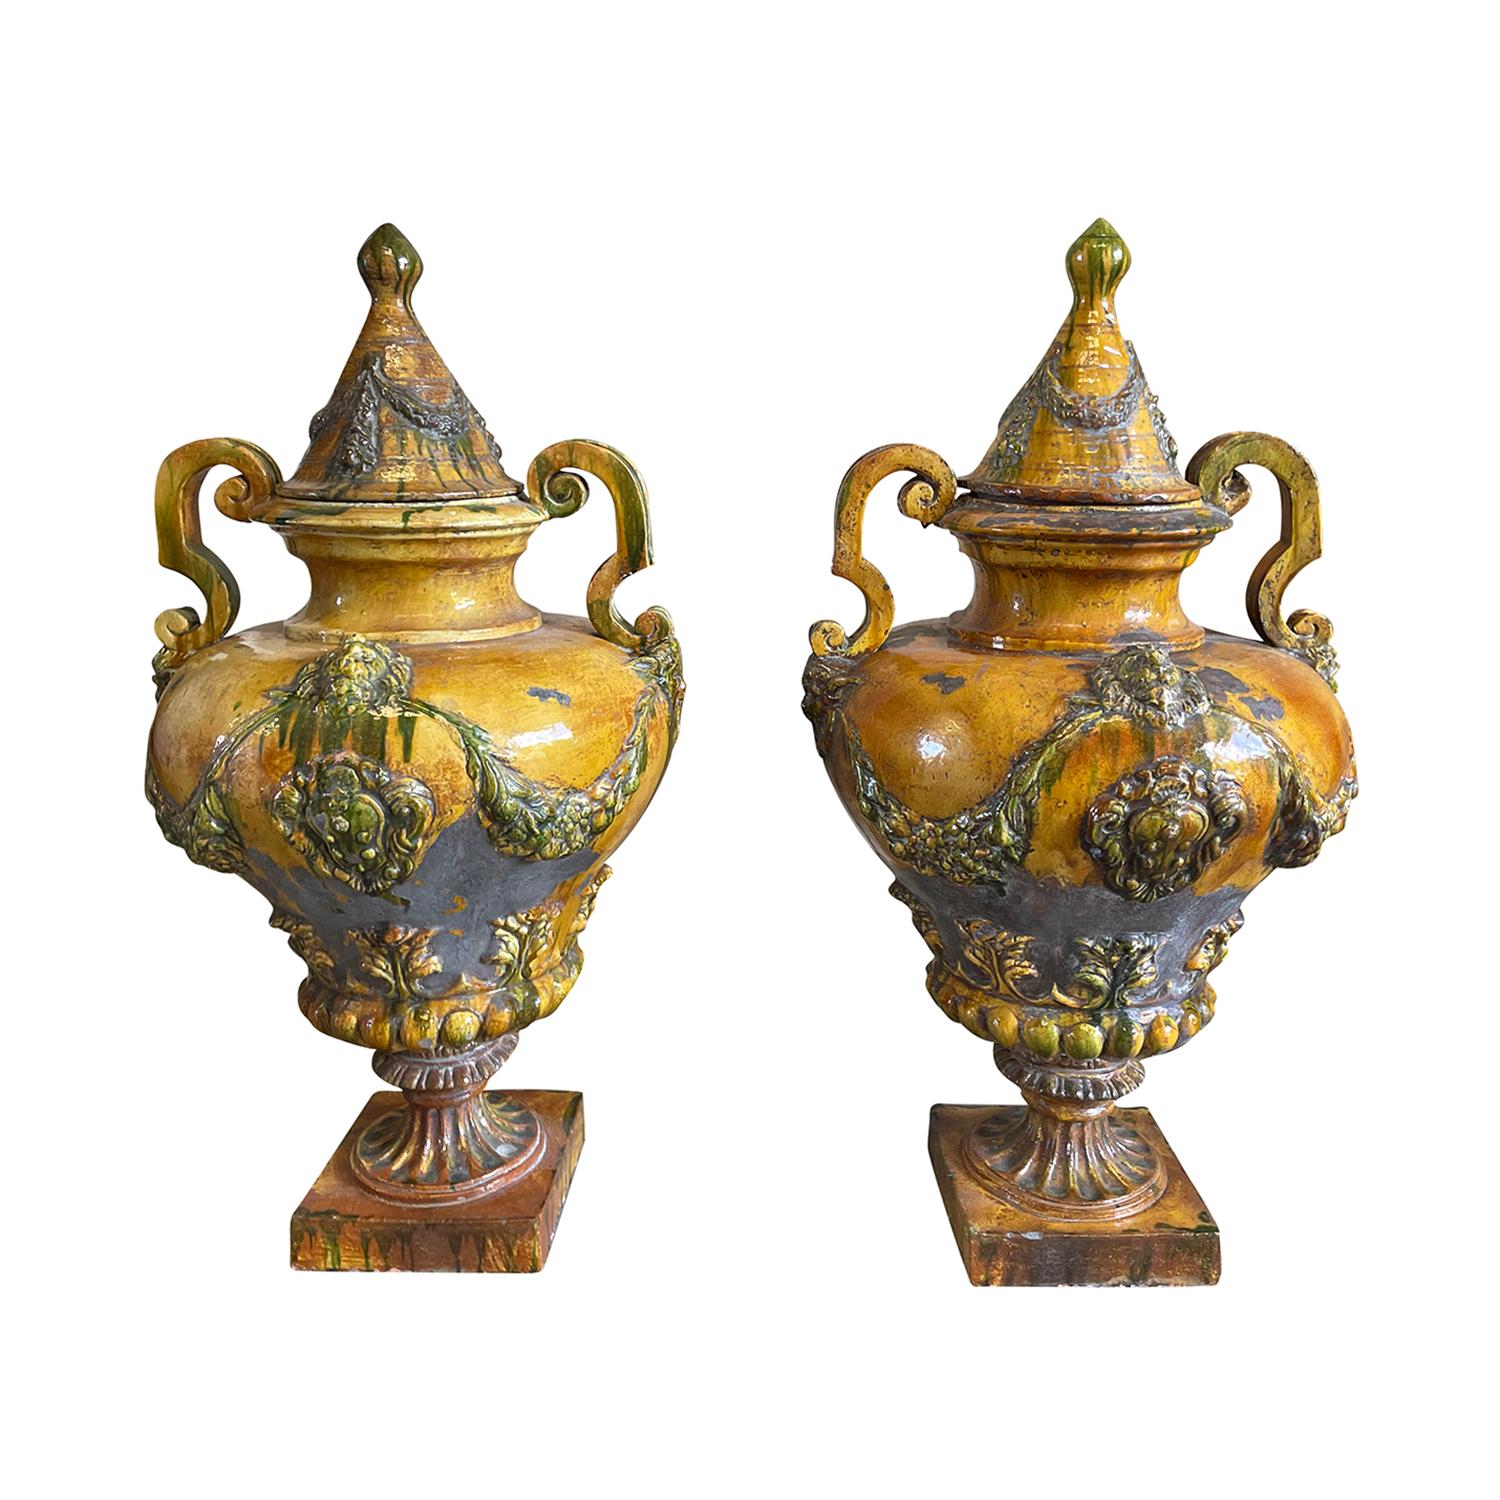 Ein Paar antiker italienischer Baluster-Urnen mit zwei Henkeln aus Keramik, glasiert im Stil des 18. Jahrhunderts in einer warmen honiggelben Glasur mit grünen Akzenten, in gutem Zustand. Diese dekorativen Gartenornamente stehen auf einem